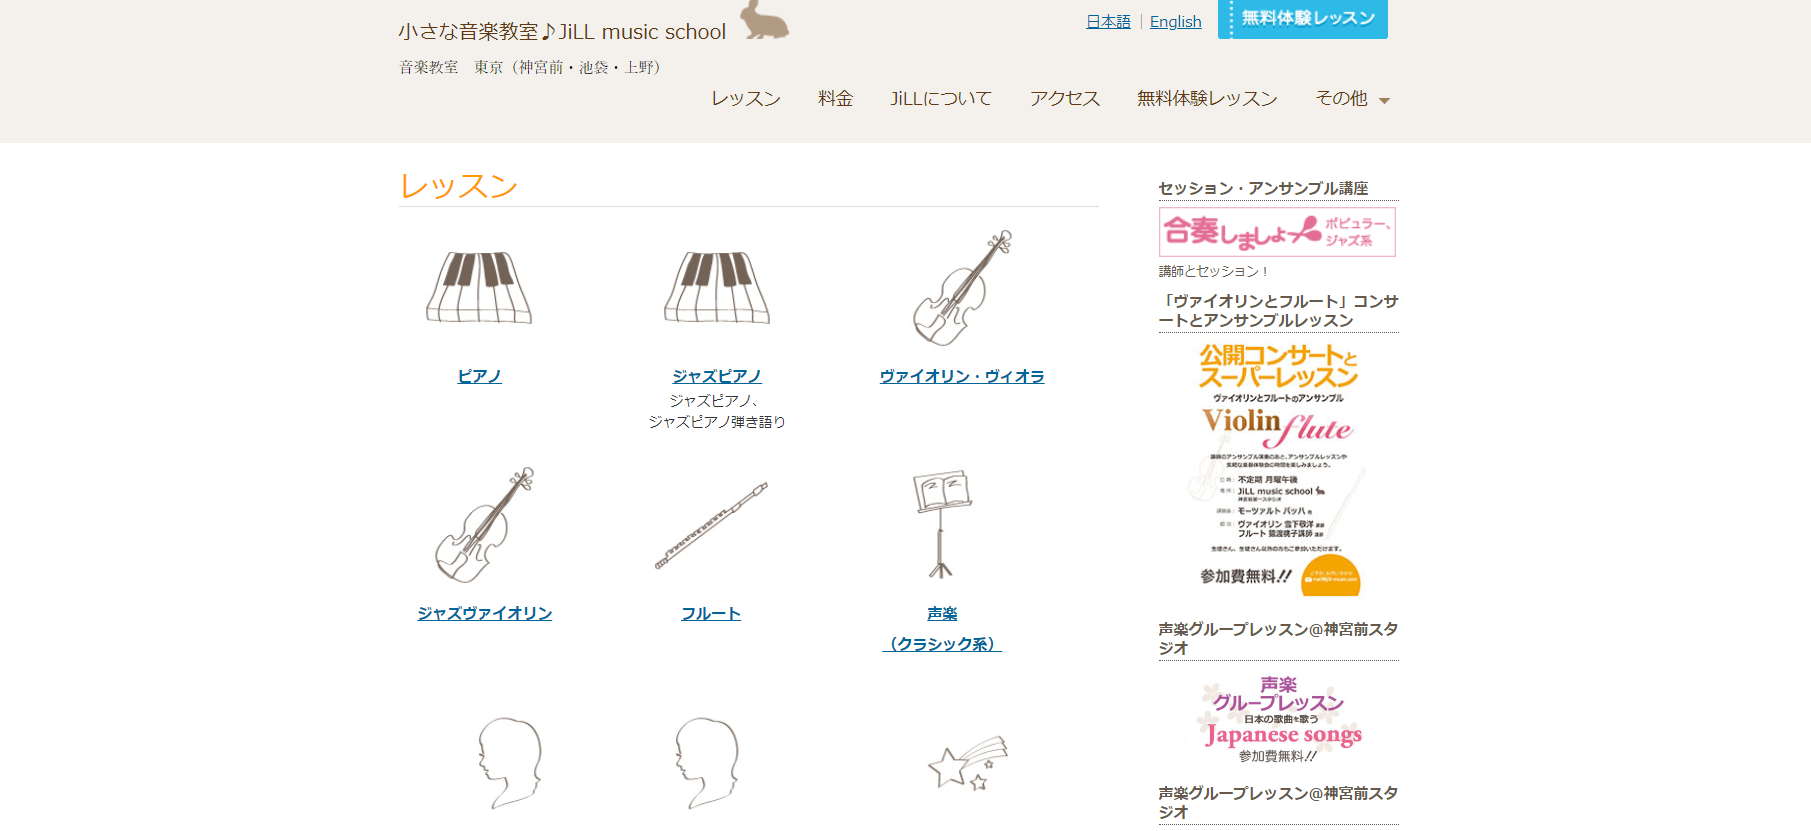 【JiLL music school】アットホームな渋谷の教室でギターレッスンが受けられる